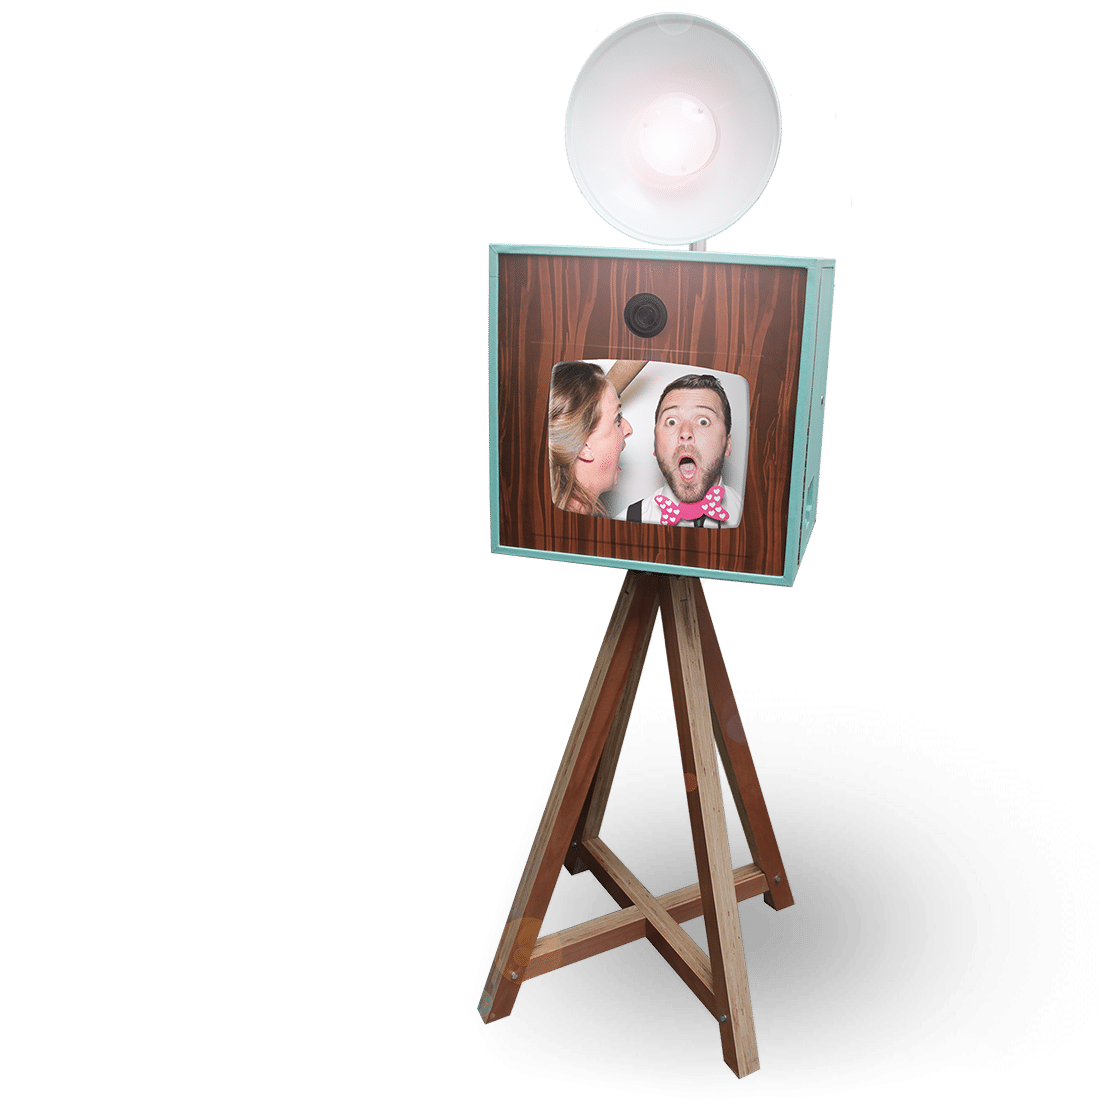 Deze catchy photobooth helpt je gasten te vermaken en ze daarnaast een origineel aandenken mee te geven, geheel in de gewenste stijl. Zoek je een photobooth die zowel foto’s als video’s kan maken? Dan zit je met de ‘New School’ photobooth helemaal goed! 

 	High-tech fotocamera en studiobelichting
 	Sublieme foto's van studiokwaliteit
 	XL-touchscreen voor dé perfecte selfie
 	Ruime keuze uit diverse achterwanden
 	Door zijn compacte, flitsende uitstraling geschikt voor iedere ruimte